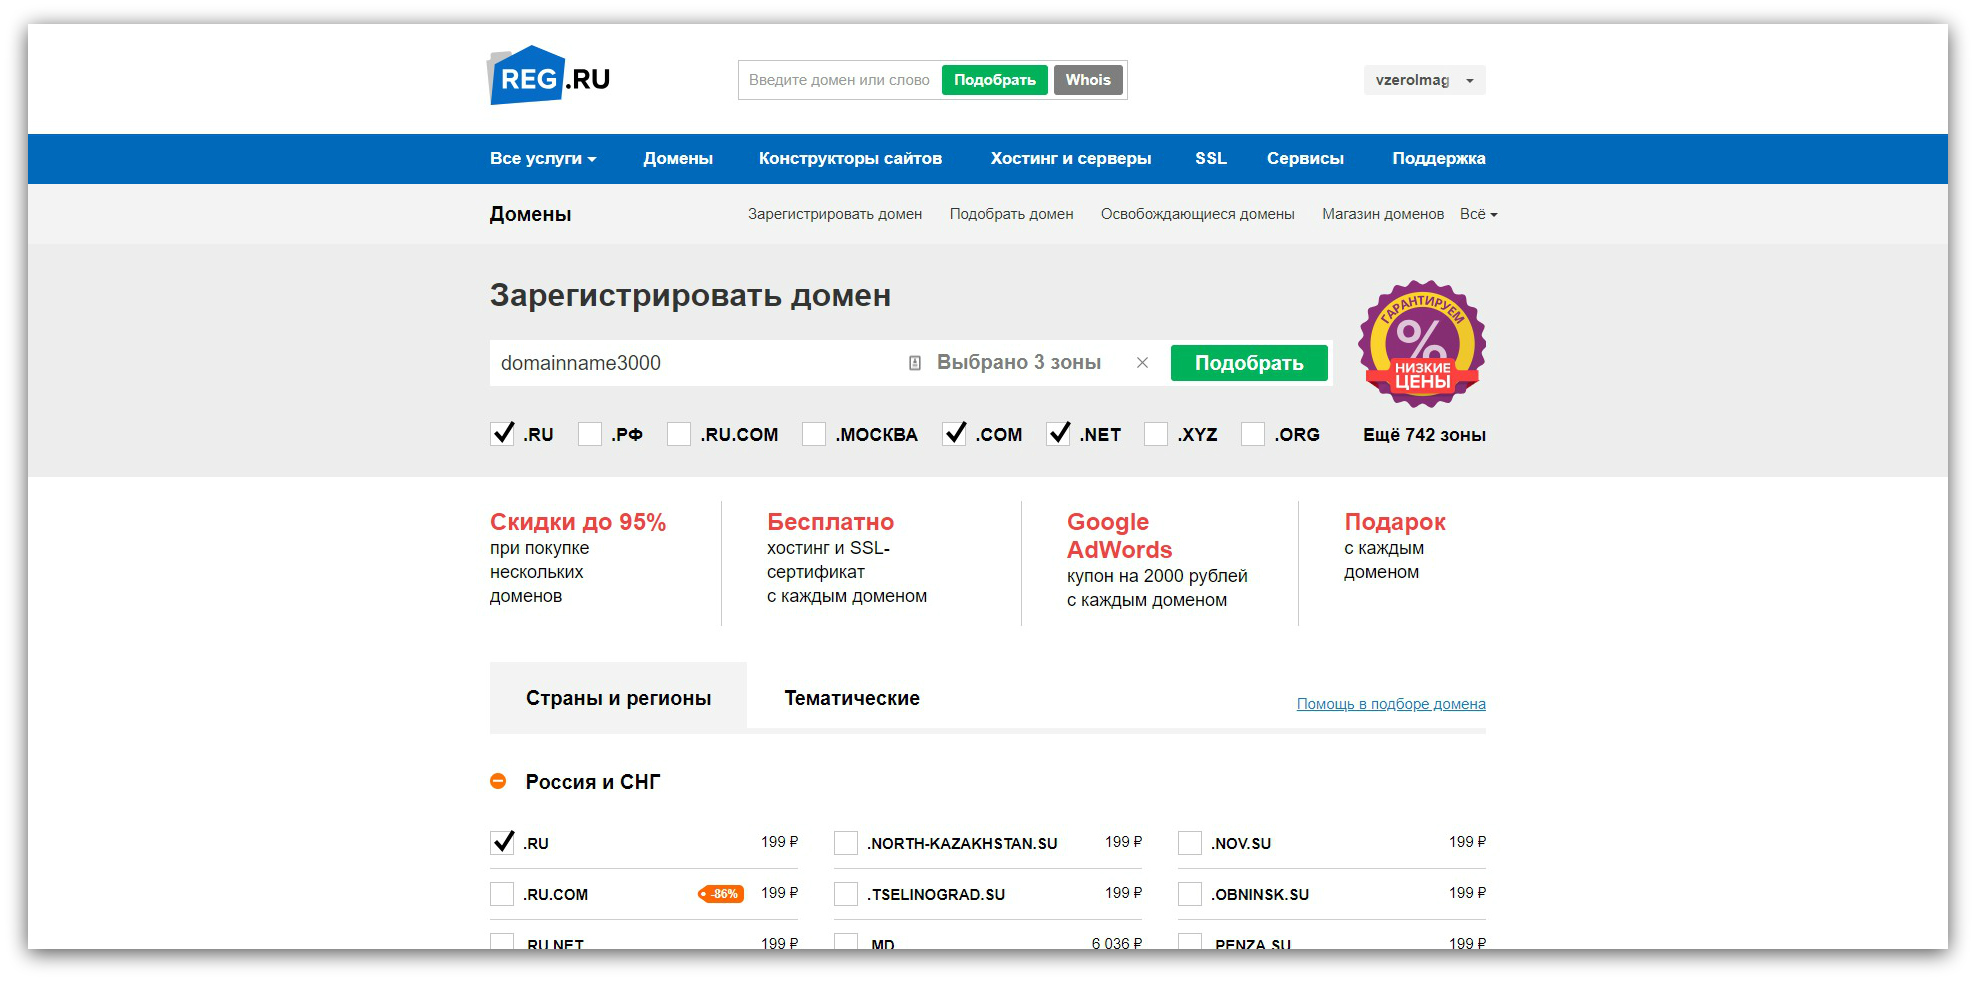 Rf reg ru. Зарегистрировать домен. Регистратор доменов. Магазин доменов РФ. Как зарегистрировать домен.